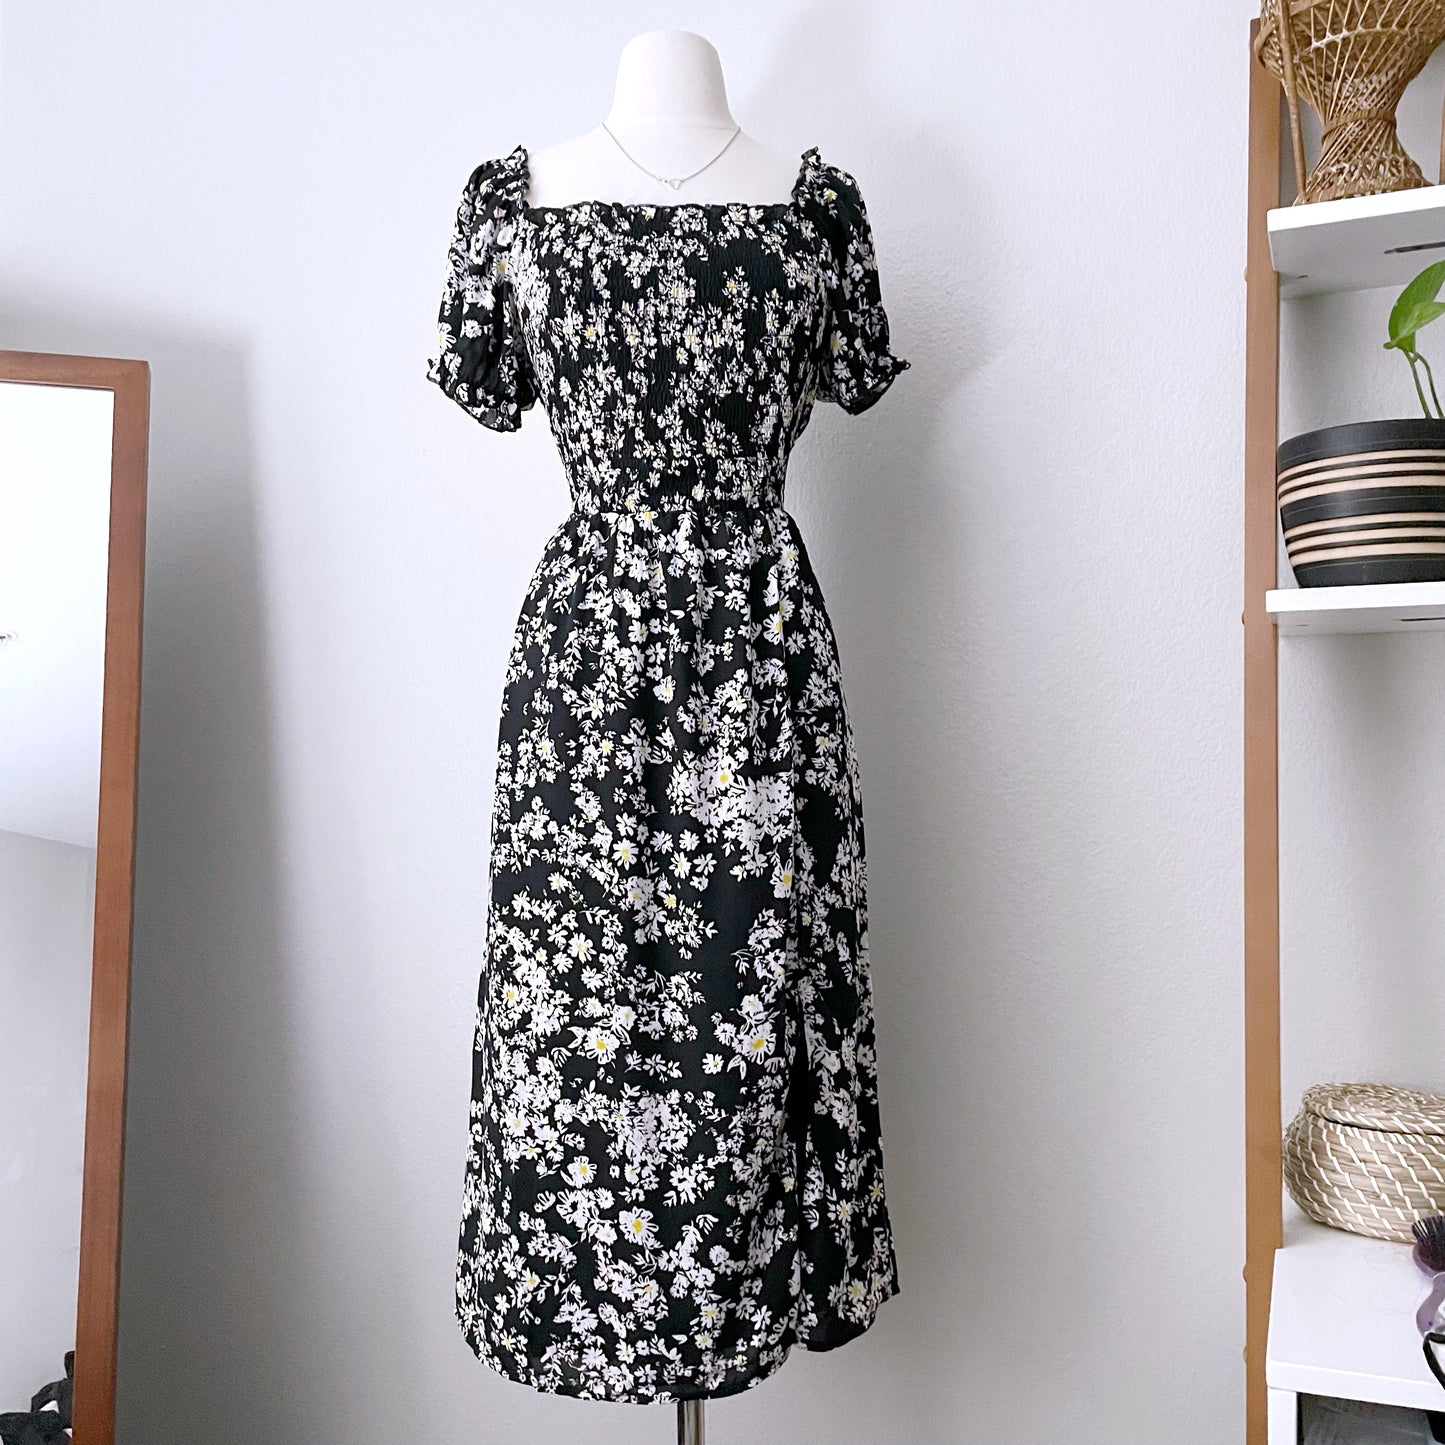 Midi Floral Square Neckline Dress (XL)